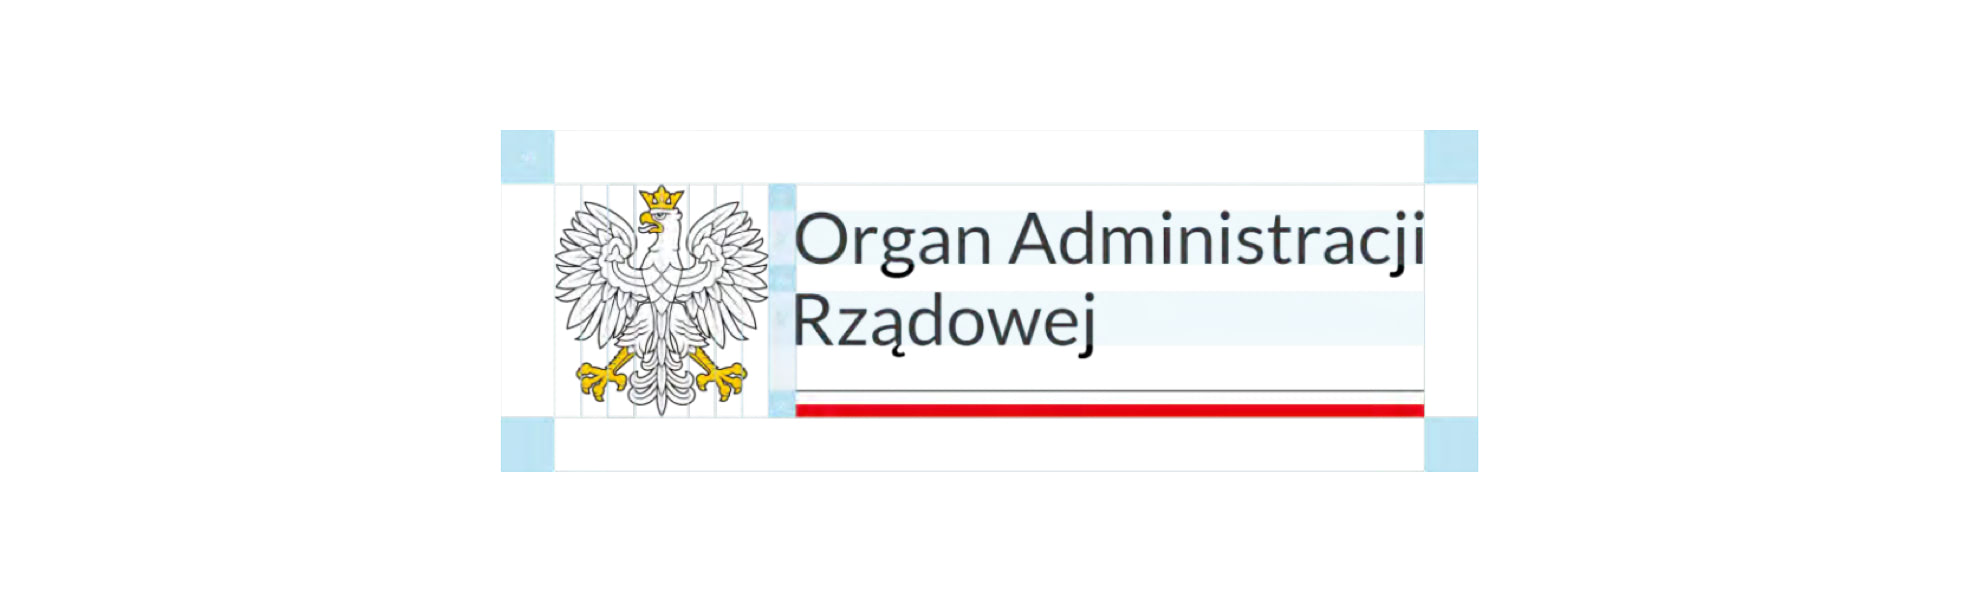 Organ Administracji Rządowej – logo